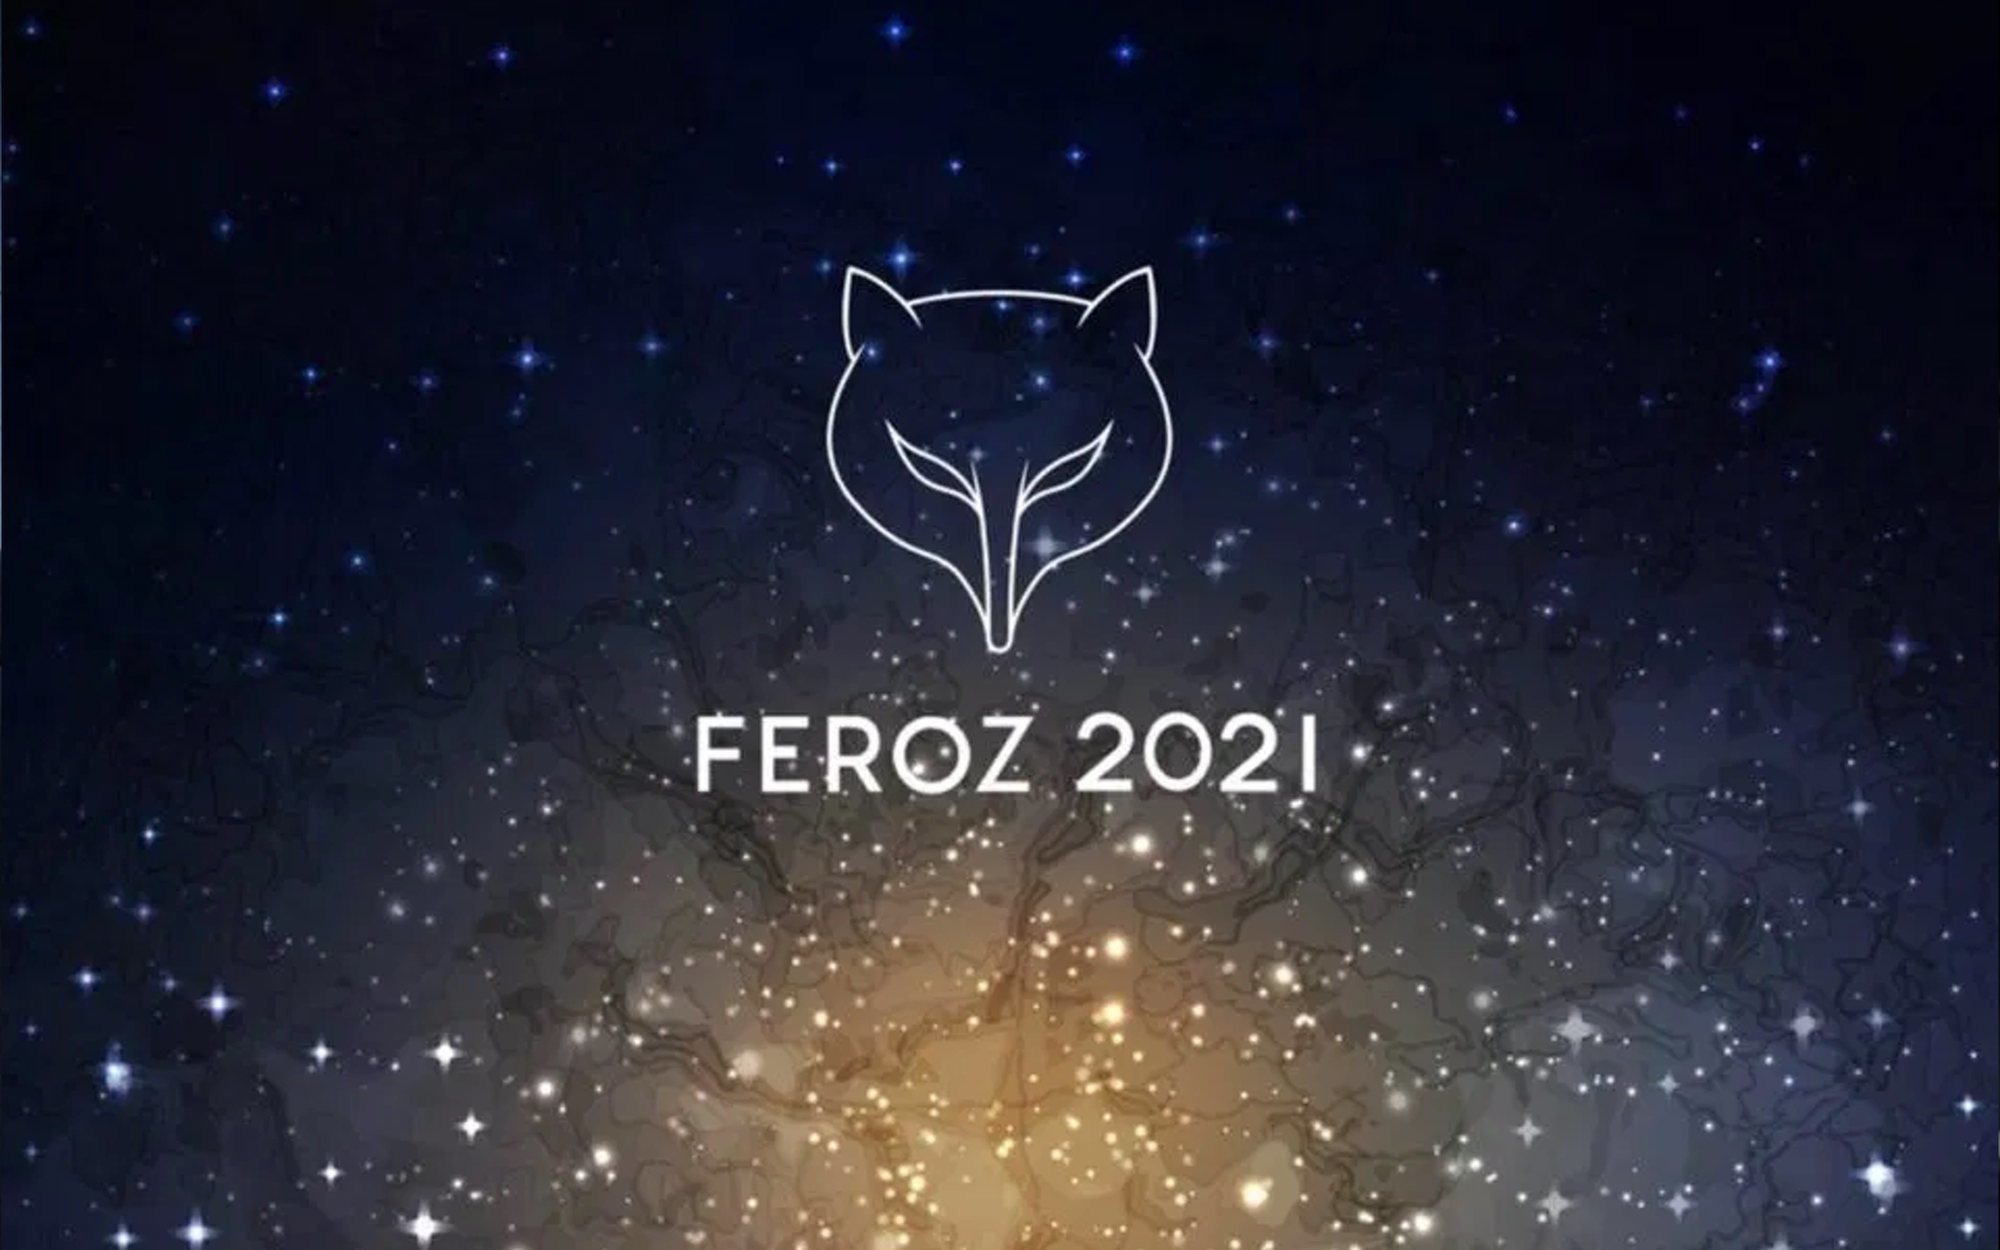 Lista completa de ganadores de los Premios Feroz 2021